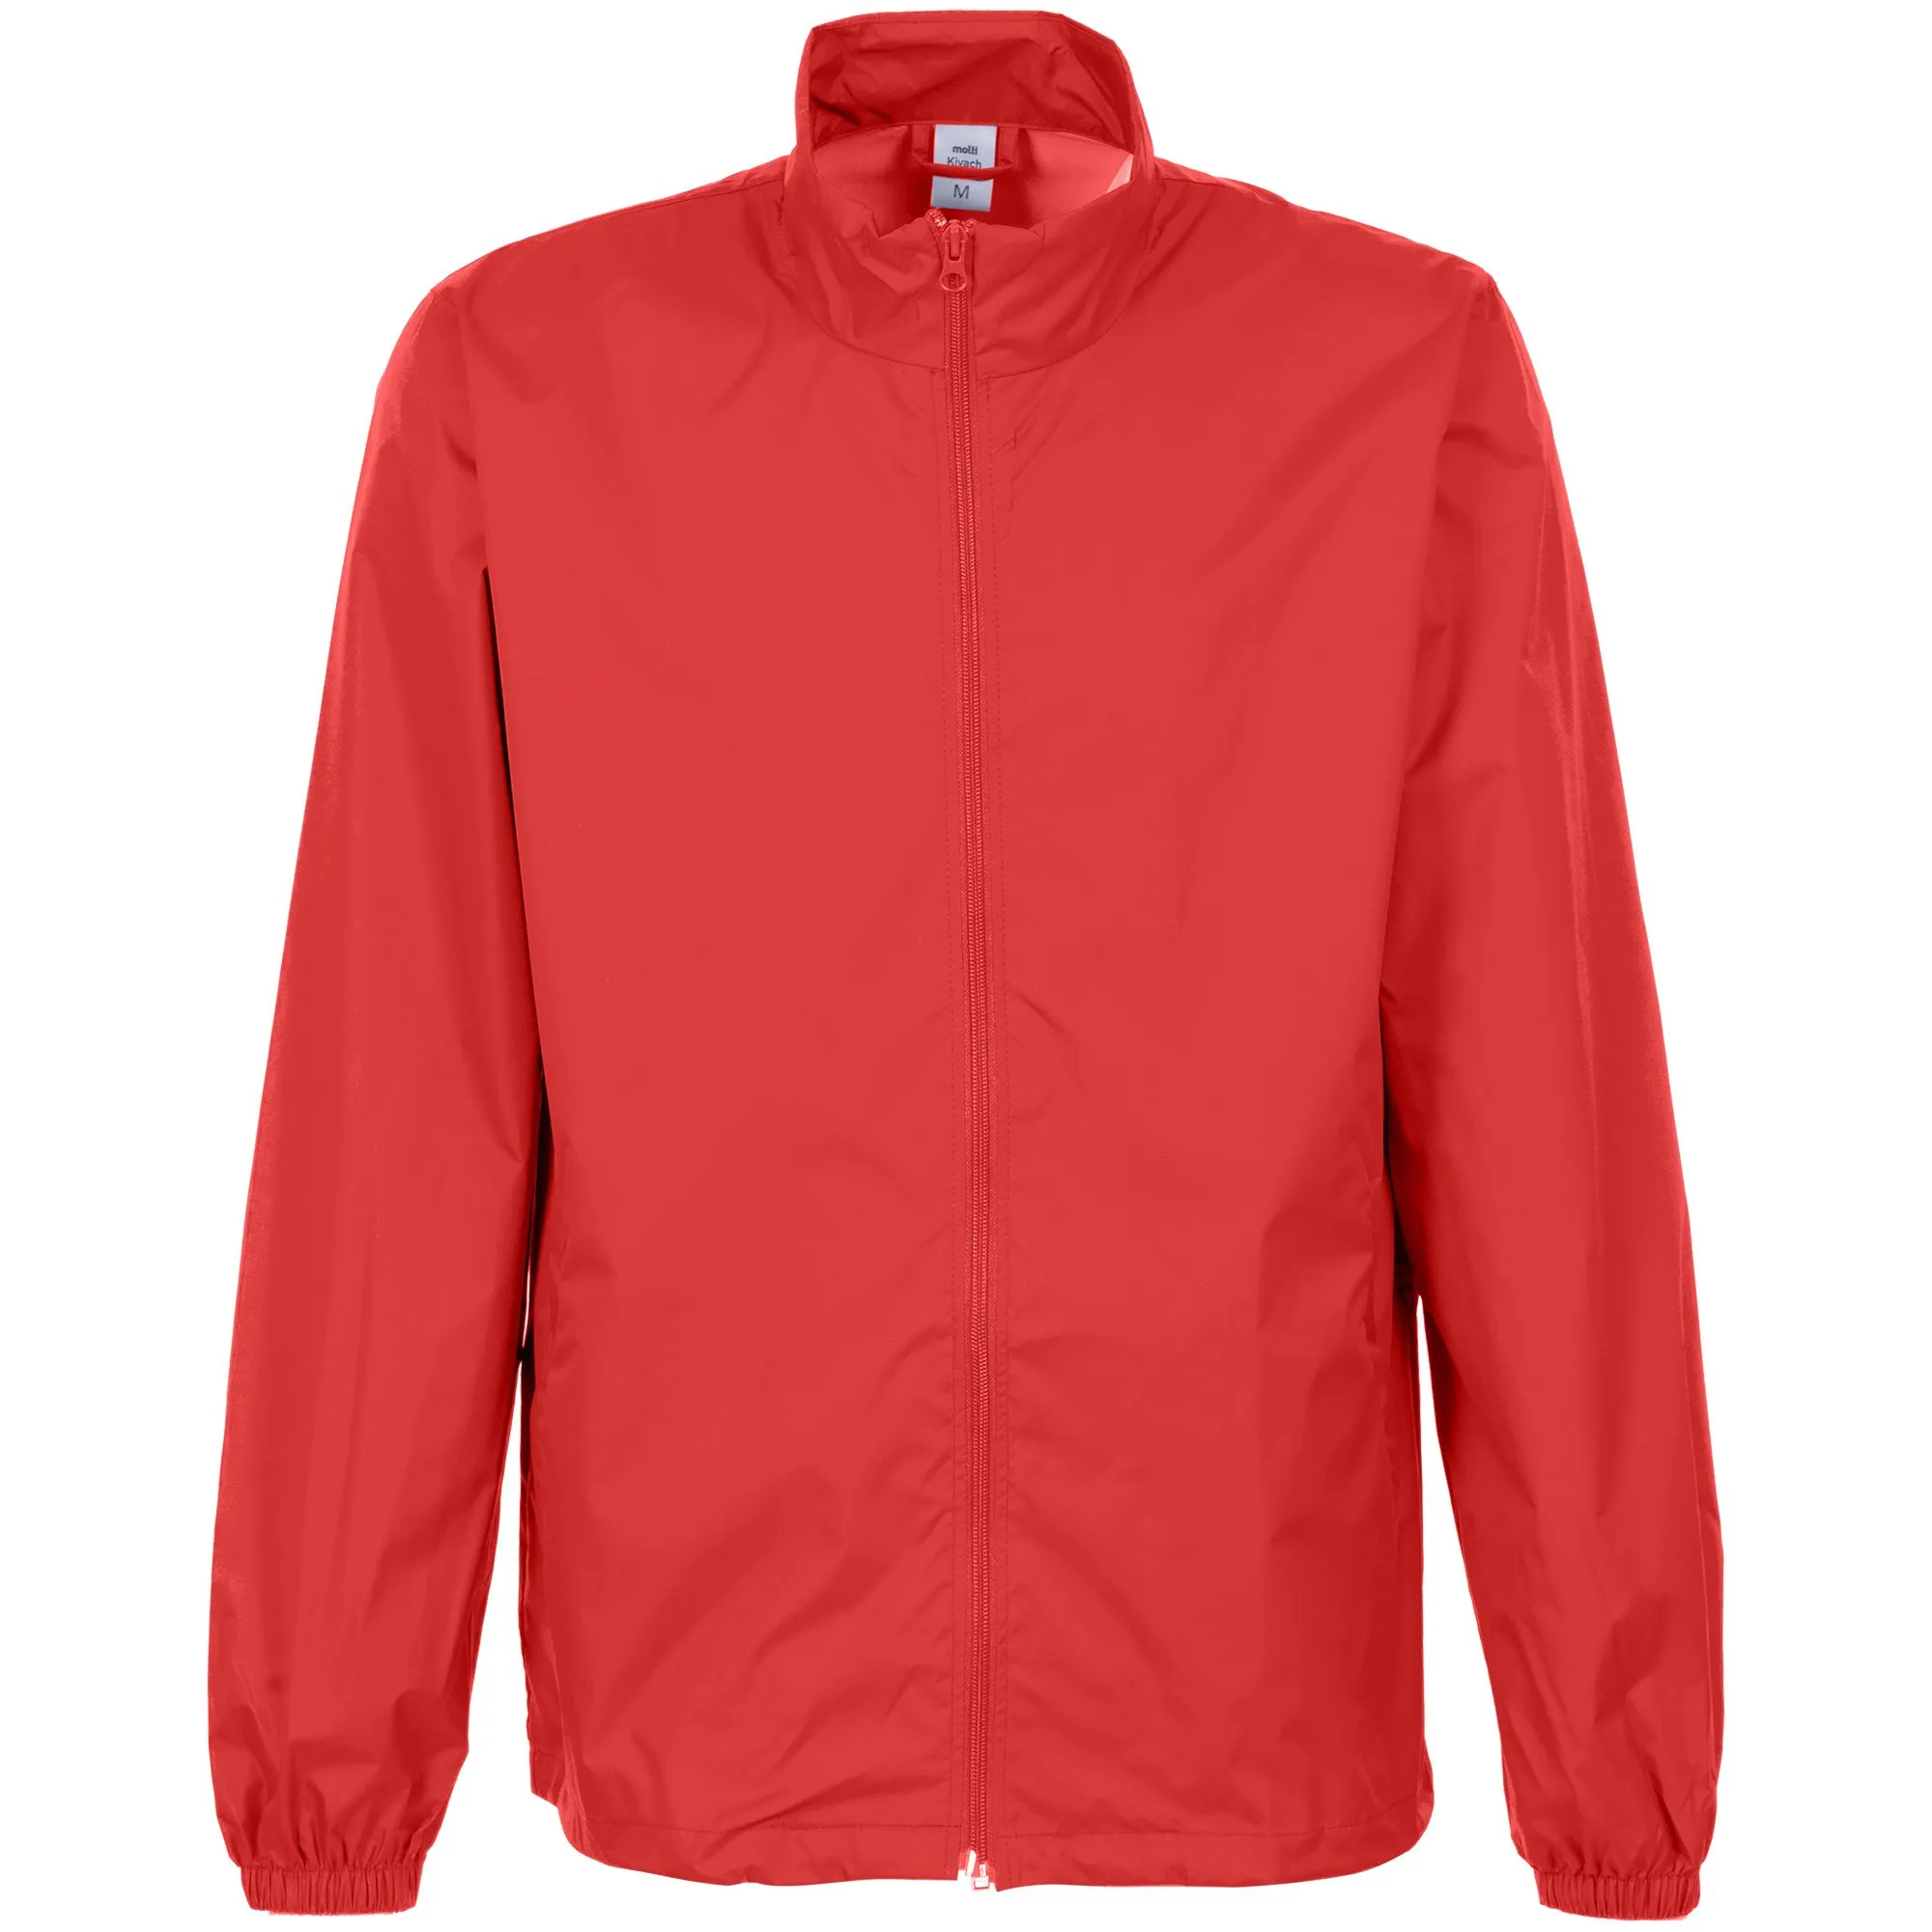 Ветровка от дождя высокого качества, пальто, оптовая продажа, уличная 100%, водонепроницаемая ветрозащитная мужская красная дождевик из полиэстера